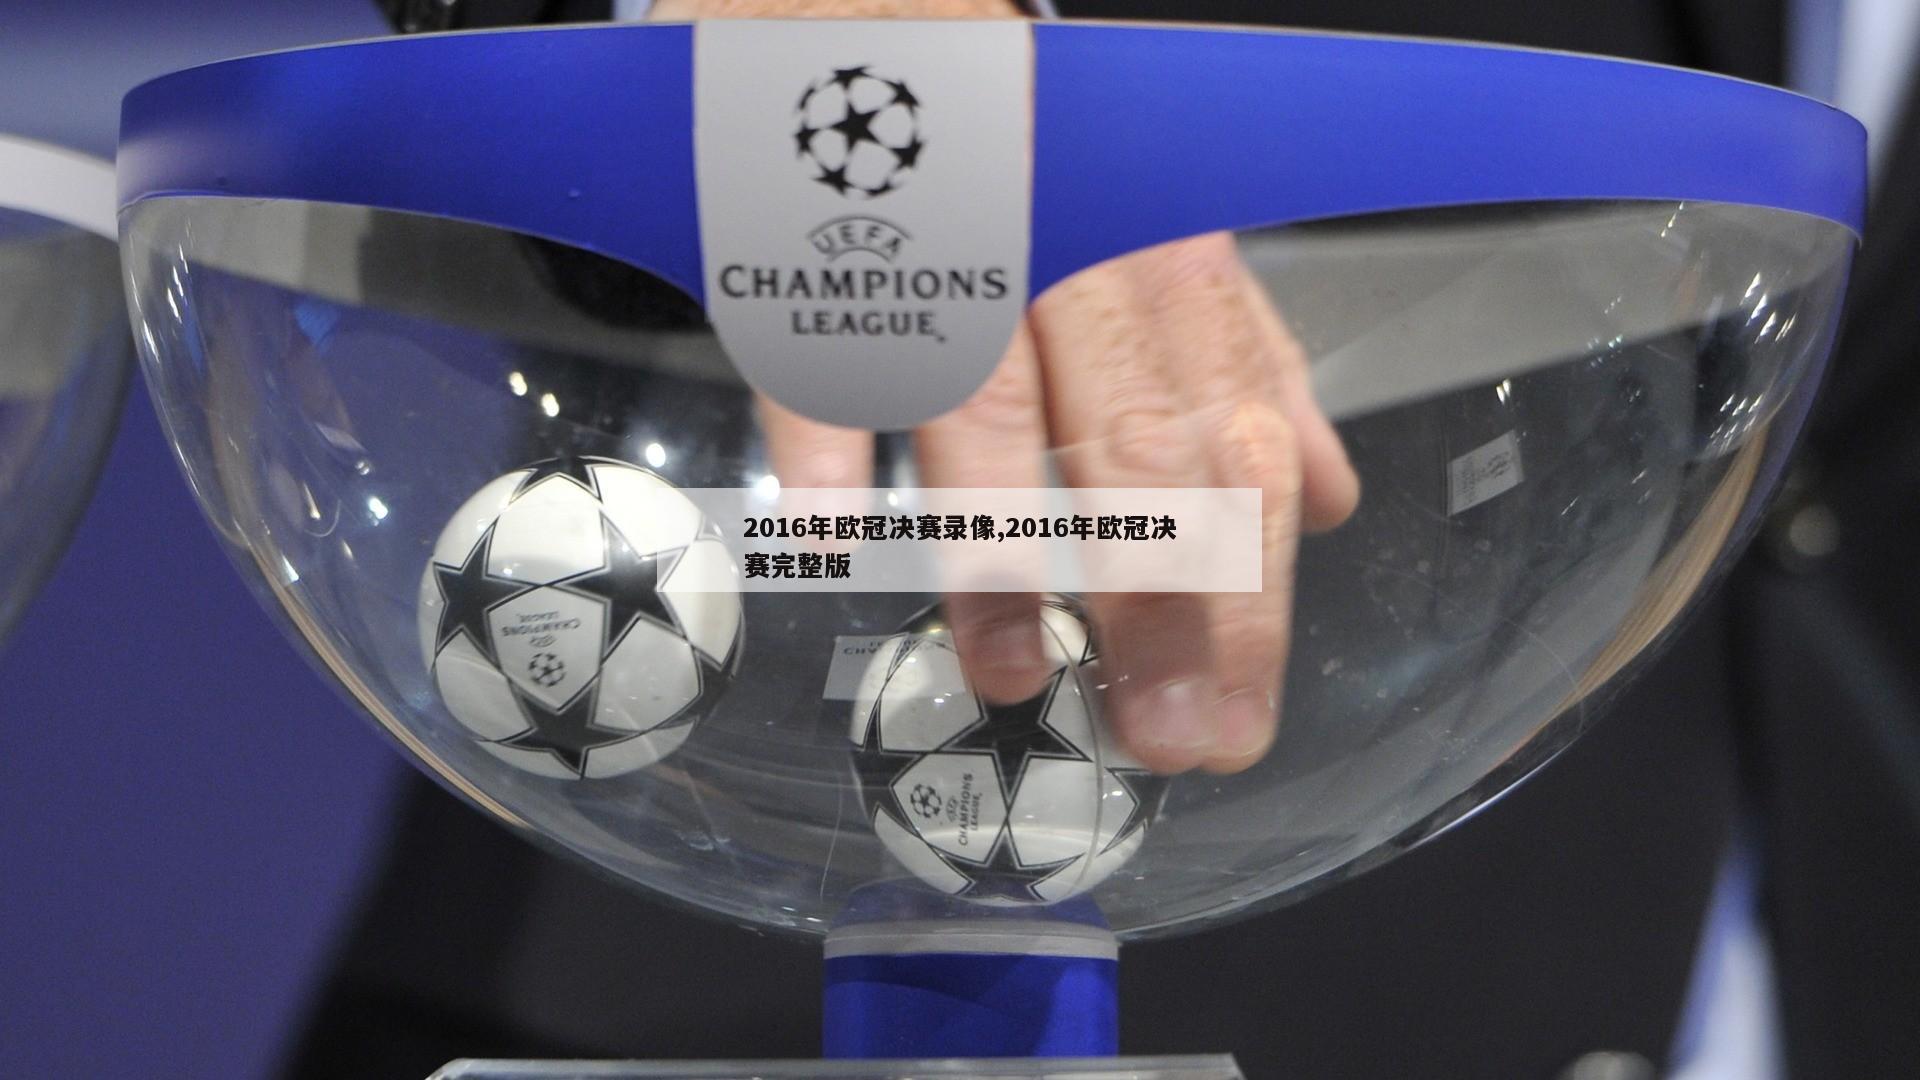 2016年欧冠决赛录像,2016年欧冠决赛完整版